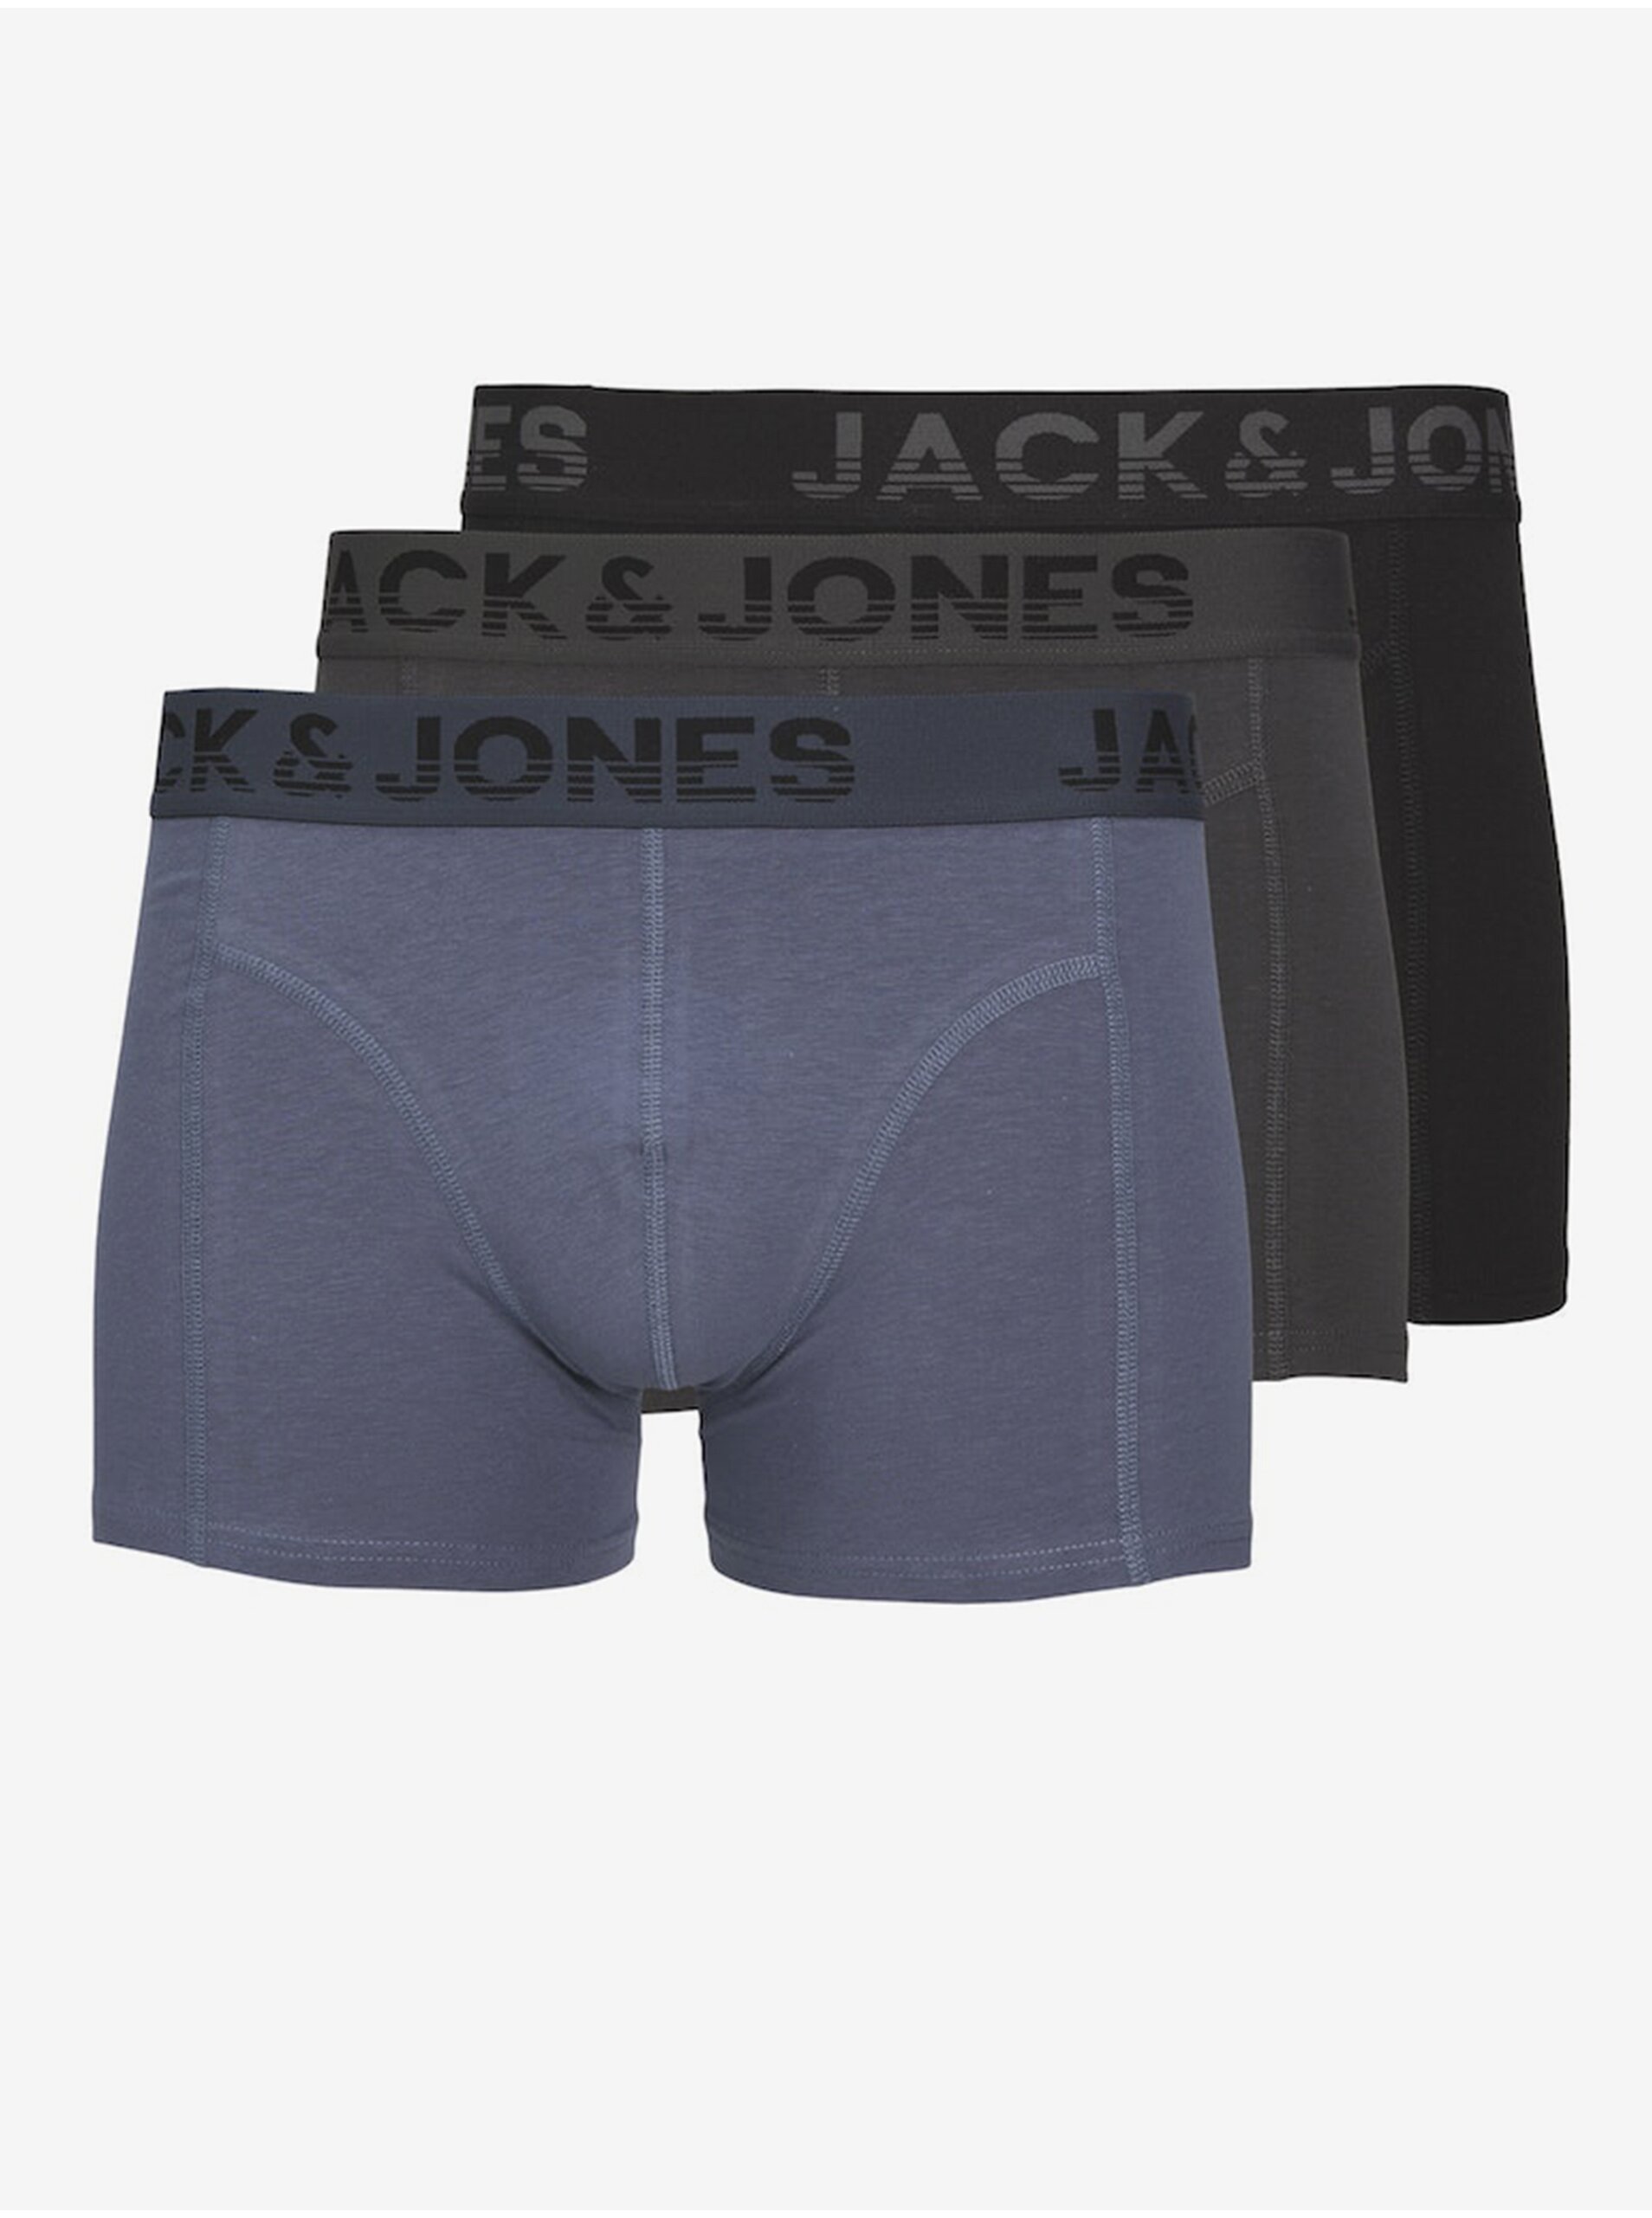 Lacno Súprava troch pánskych boxeriek v čiernej, šedej a modrej farbe Jack & Jones